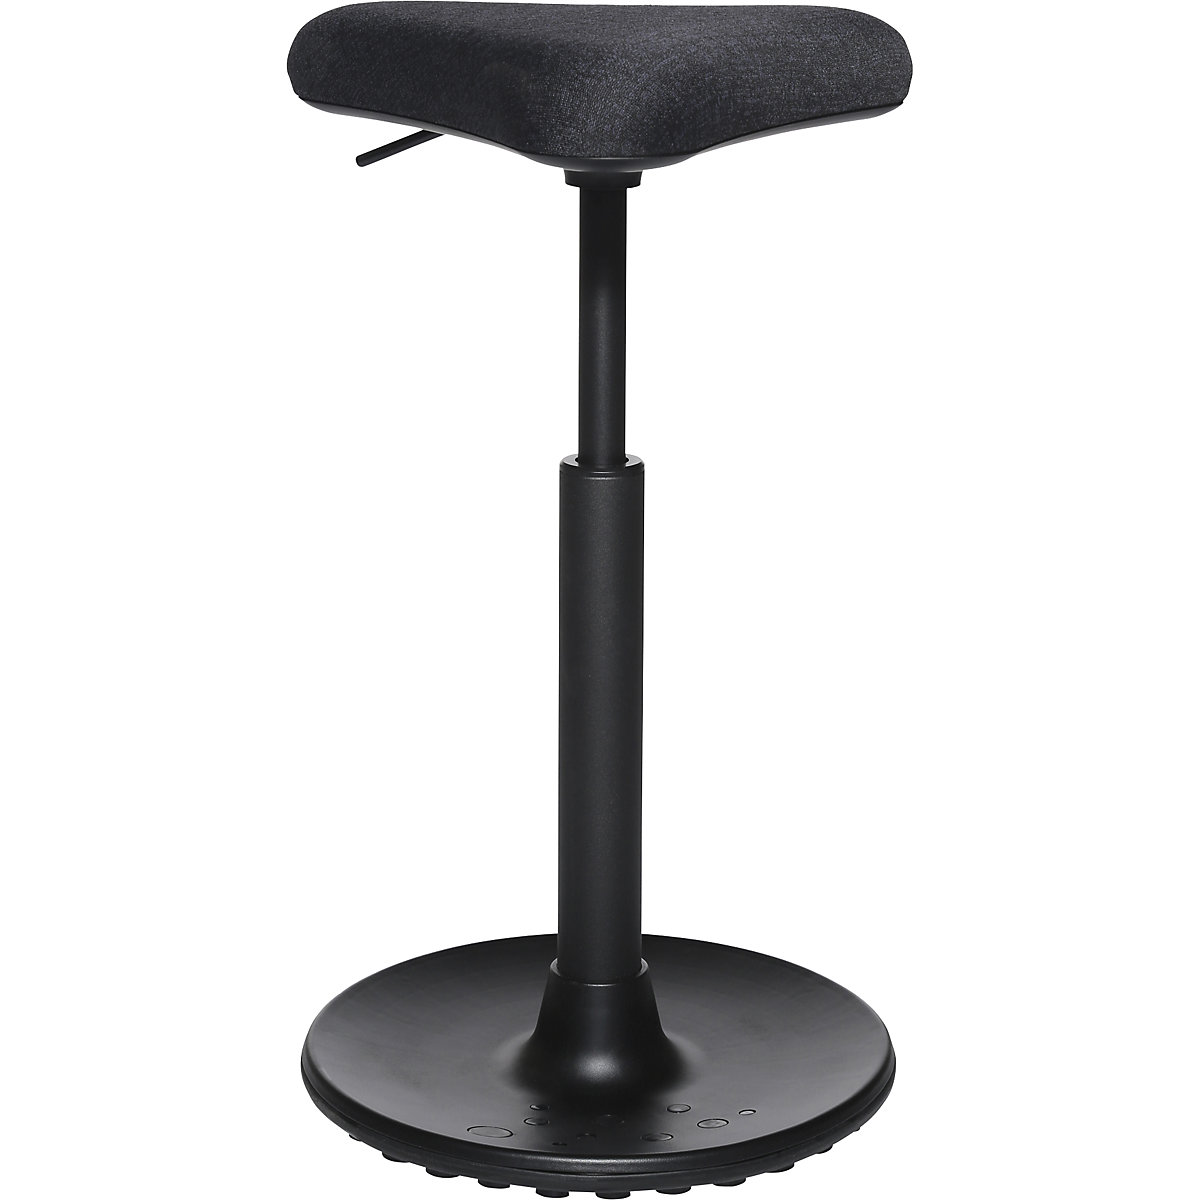 Balanční stolička SITNESS H – Topstar, model H1, s trojúhelníkovým sedákem, černý potah se vzorem, patka černá-6